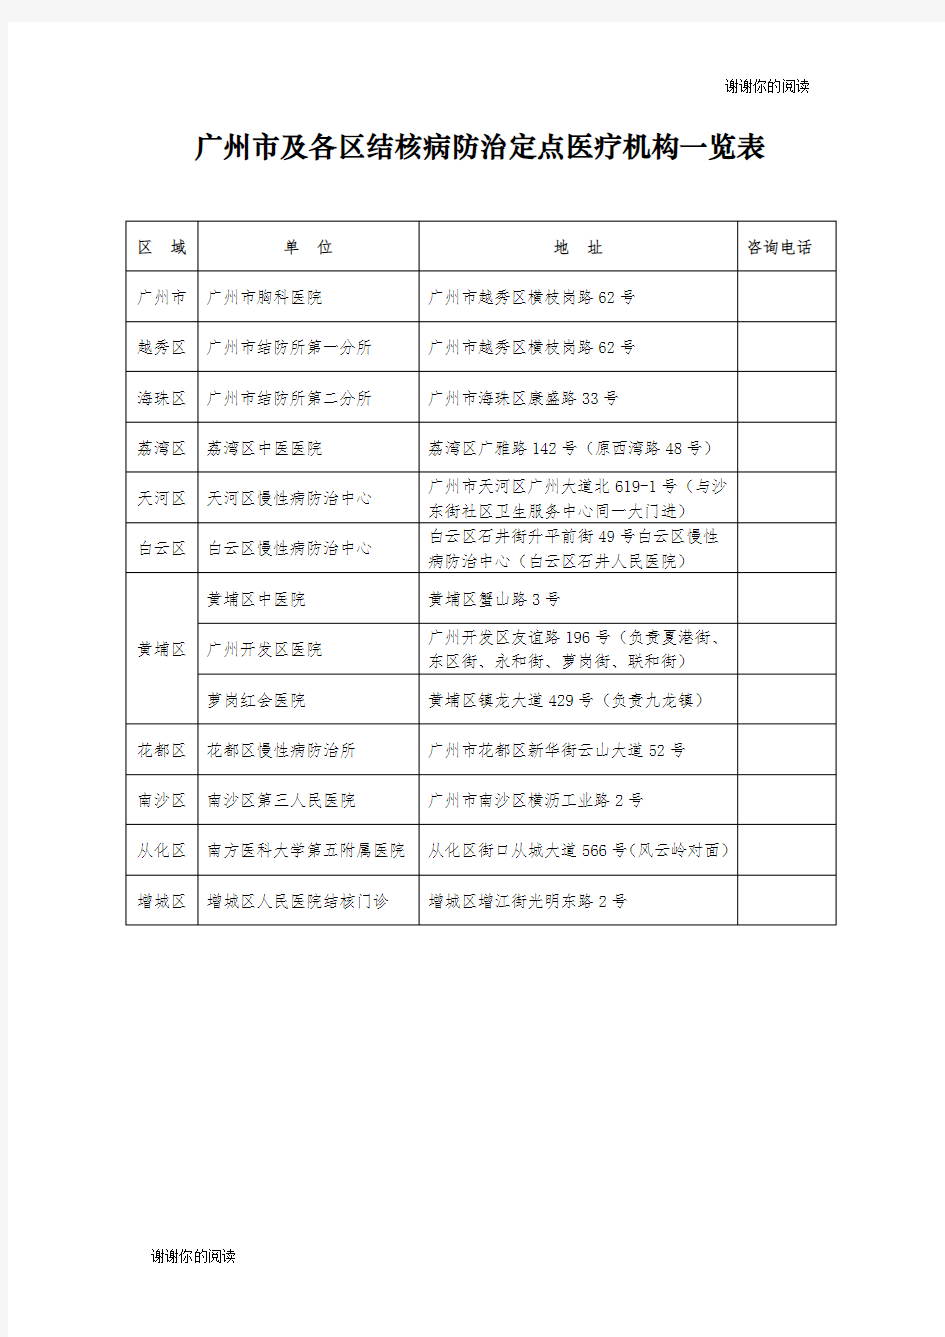 广州市及各区结核病防治定点医疗机构一览表.doc